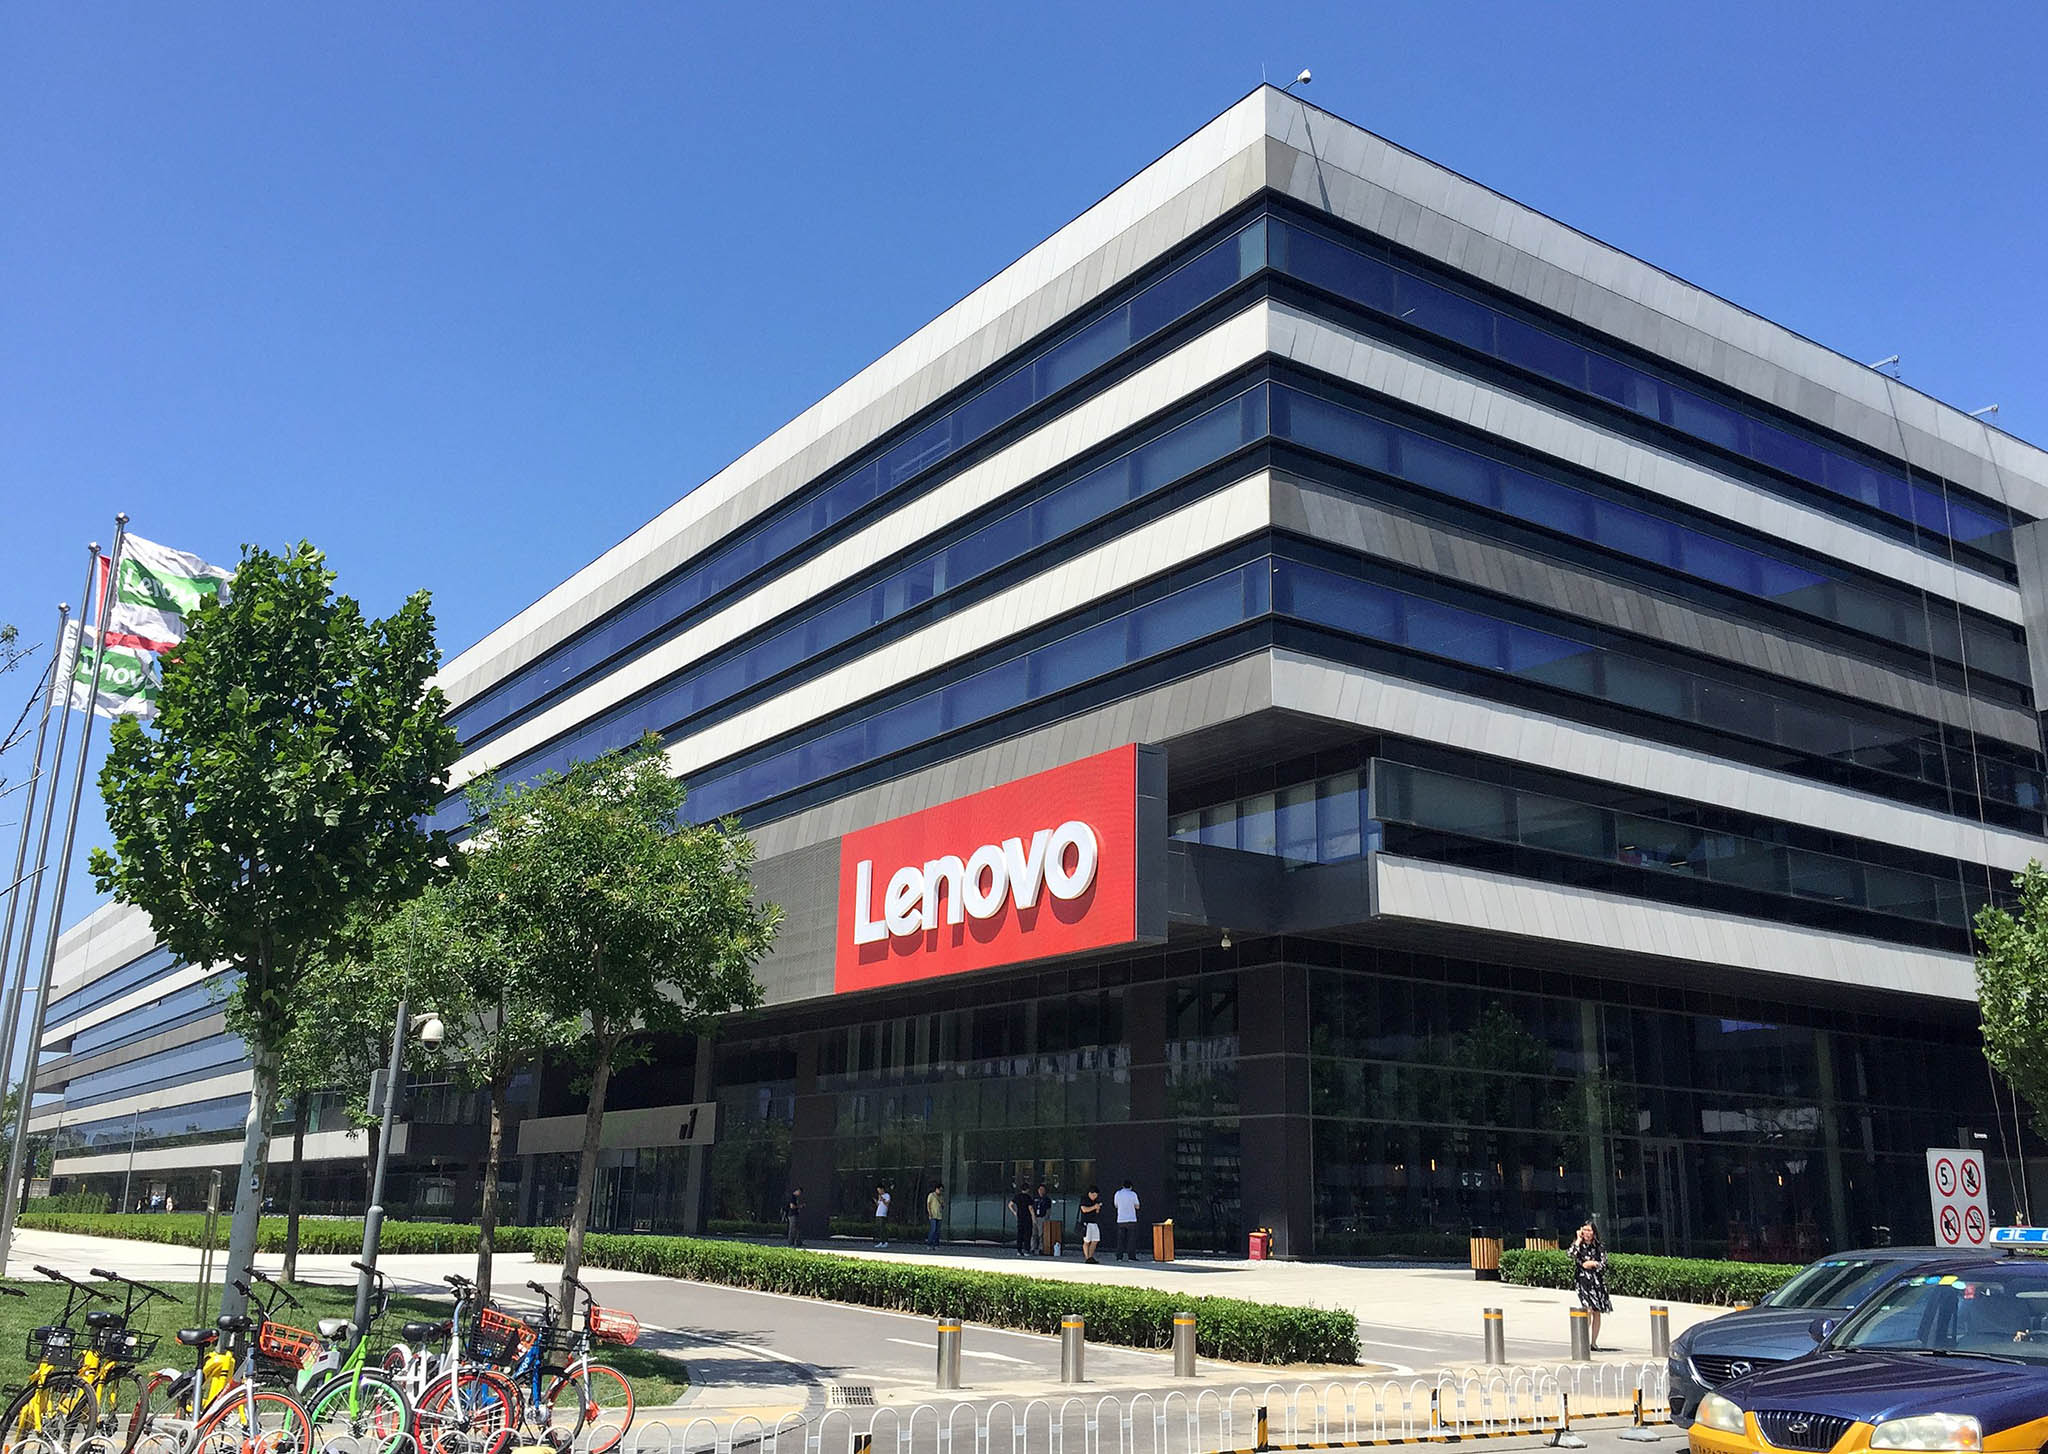 Sau thời gian bùng nổ của ngành PC, Lenovo thông báo lợi nhuận giảm tới 75% trong quý I